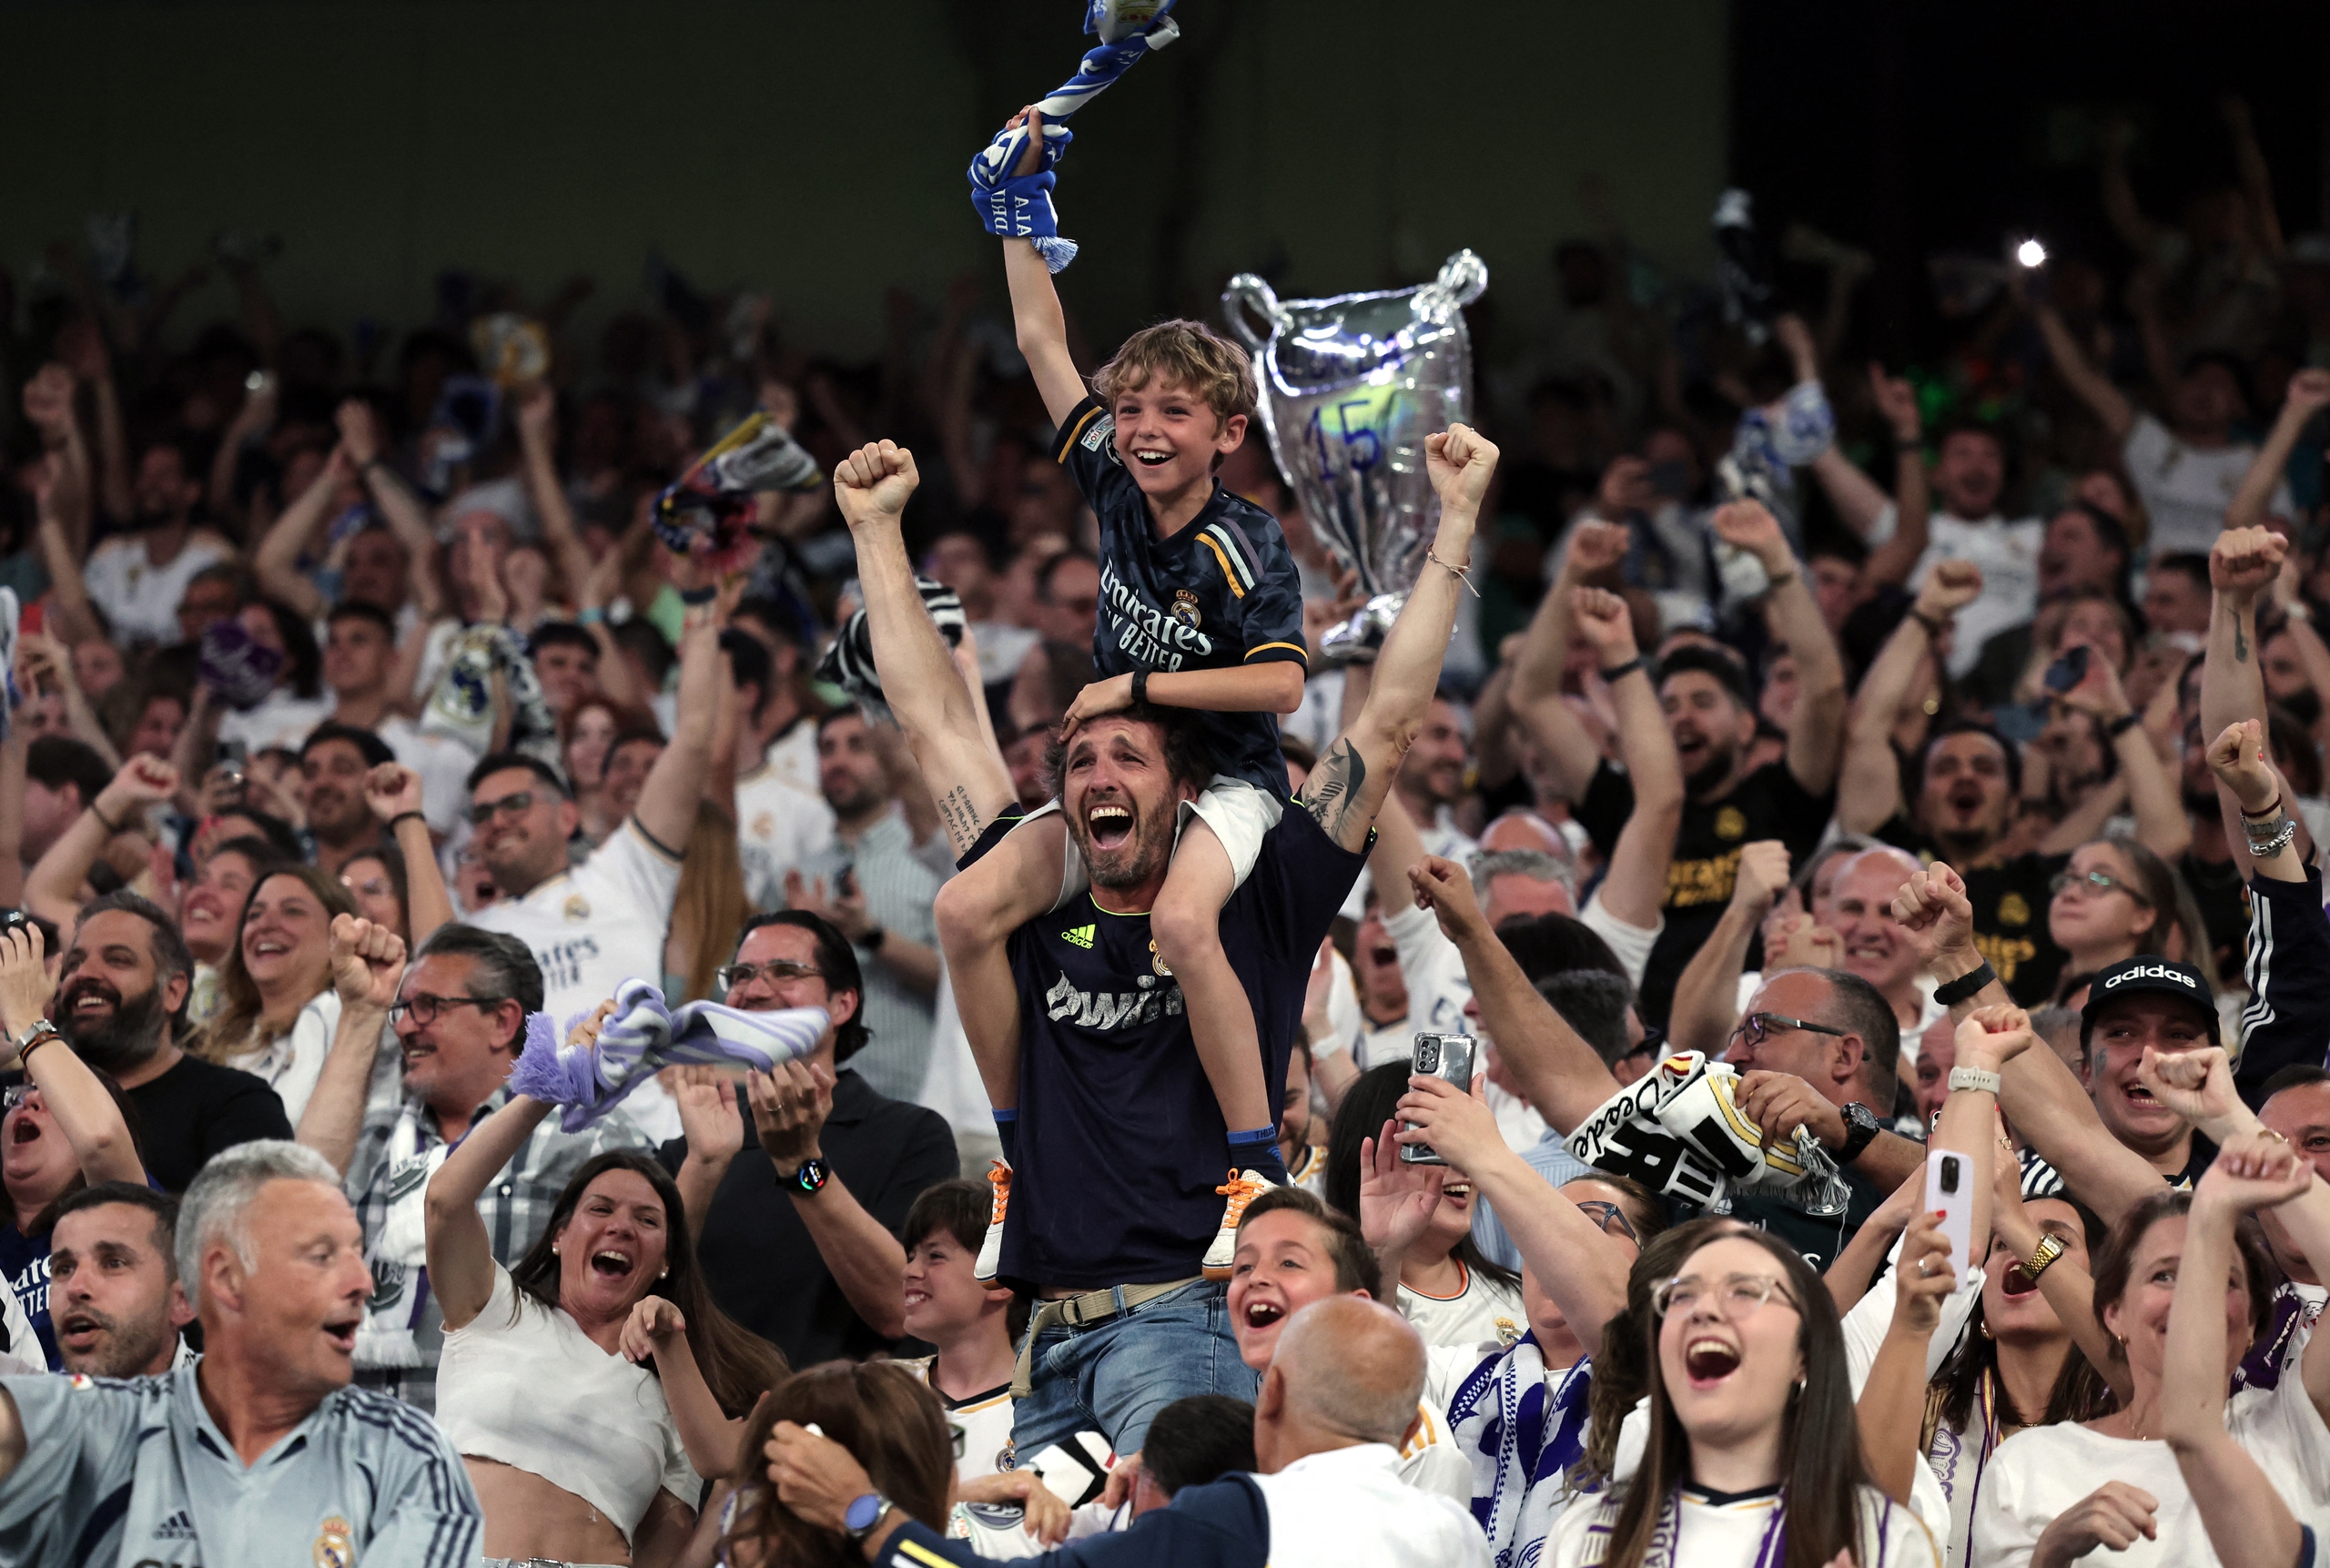 Lần thứ 15 đăng quang, Real Madrid tiếp tục làm bá chủ giải hàng đầu châu Âu- Ảnh 10.